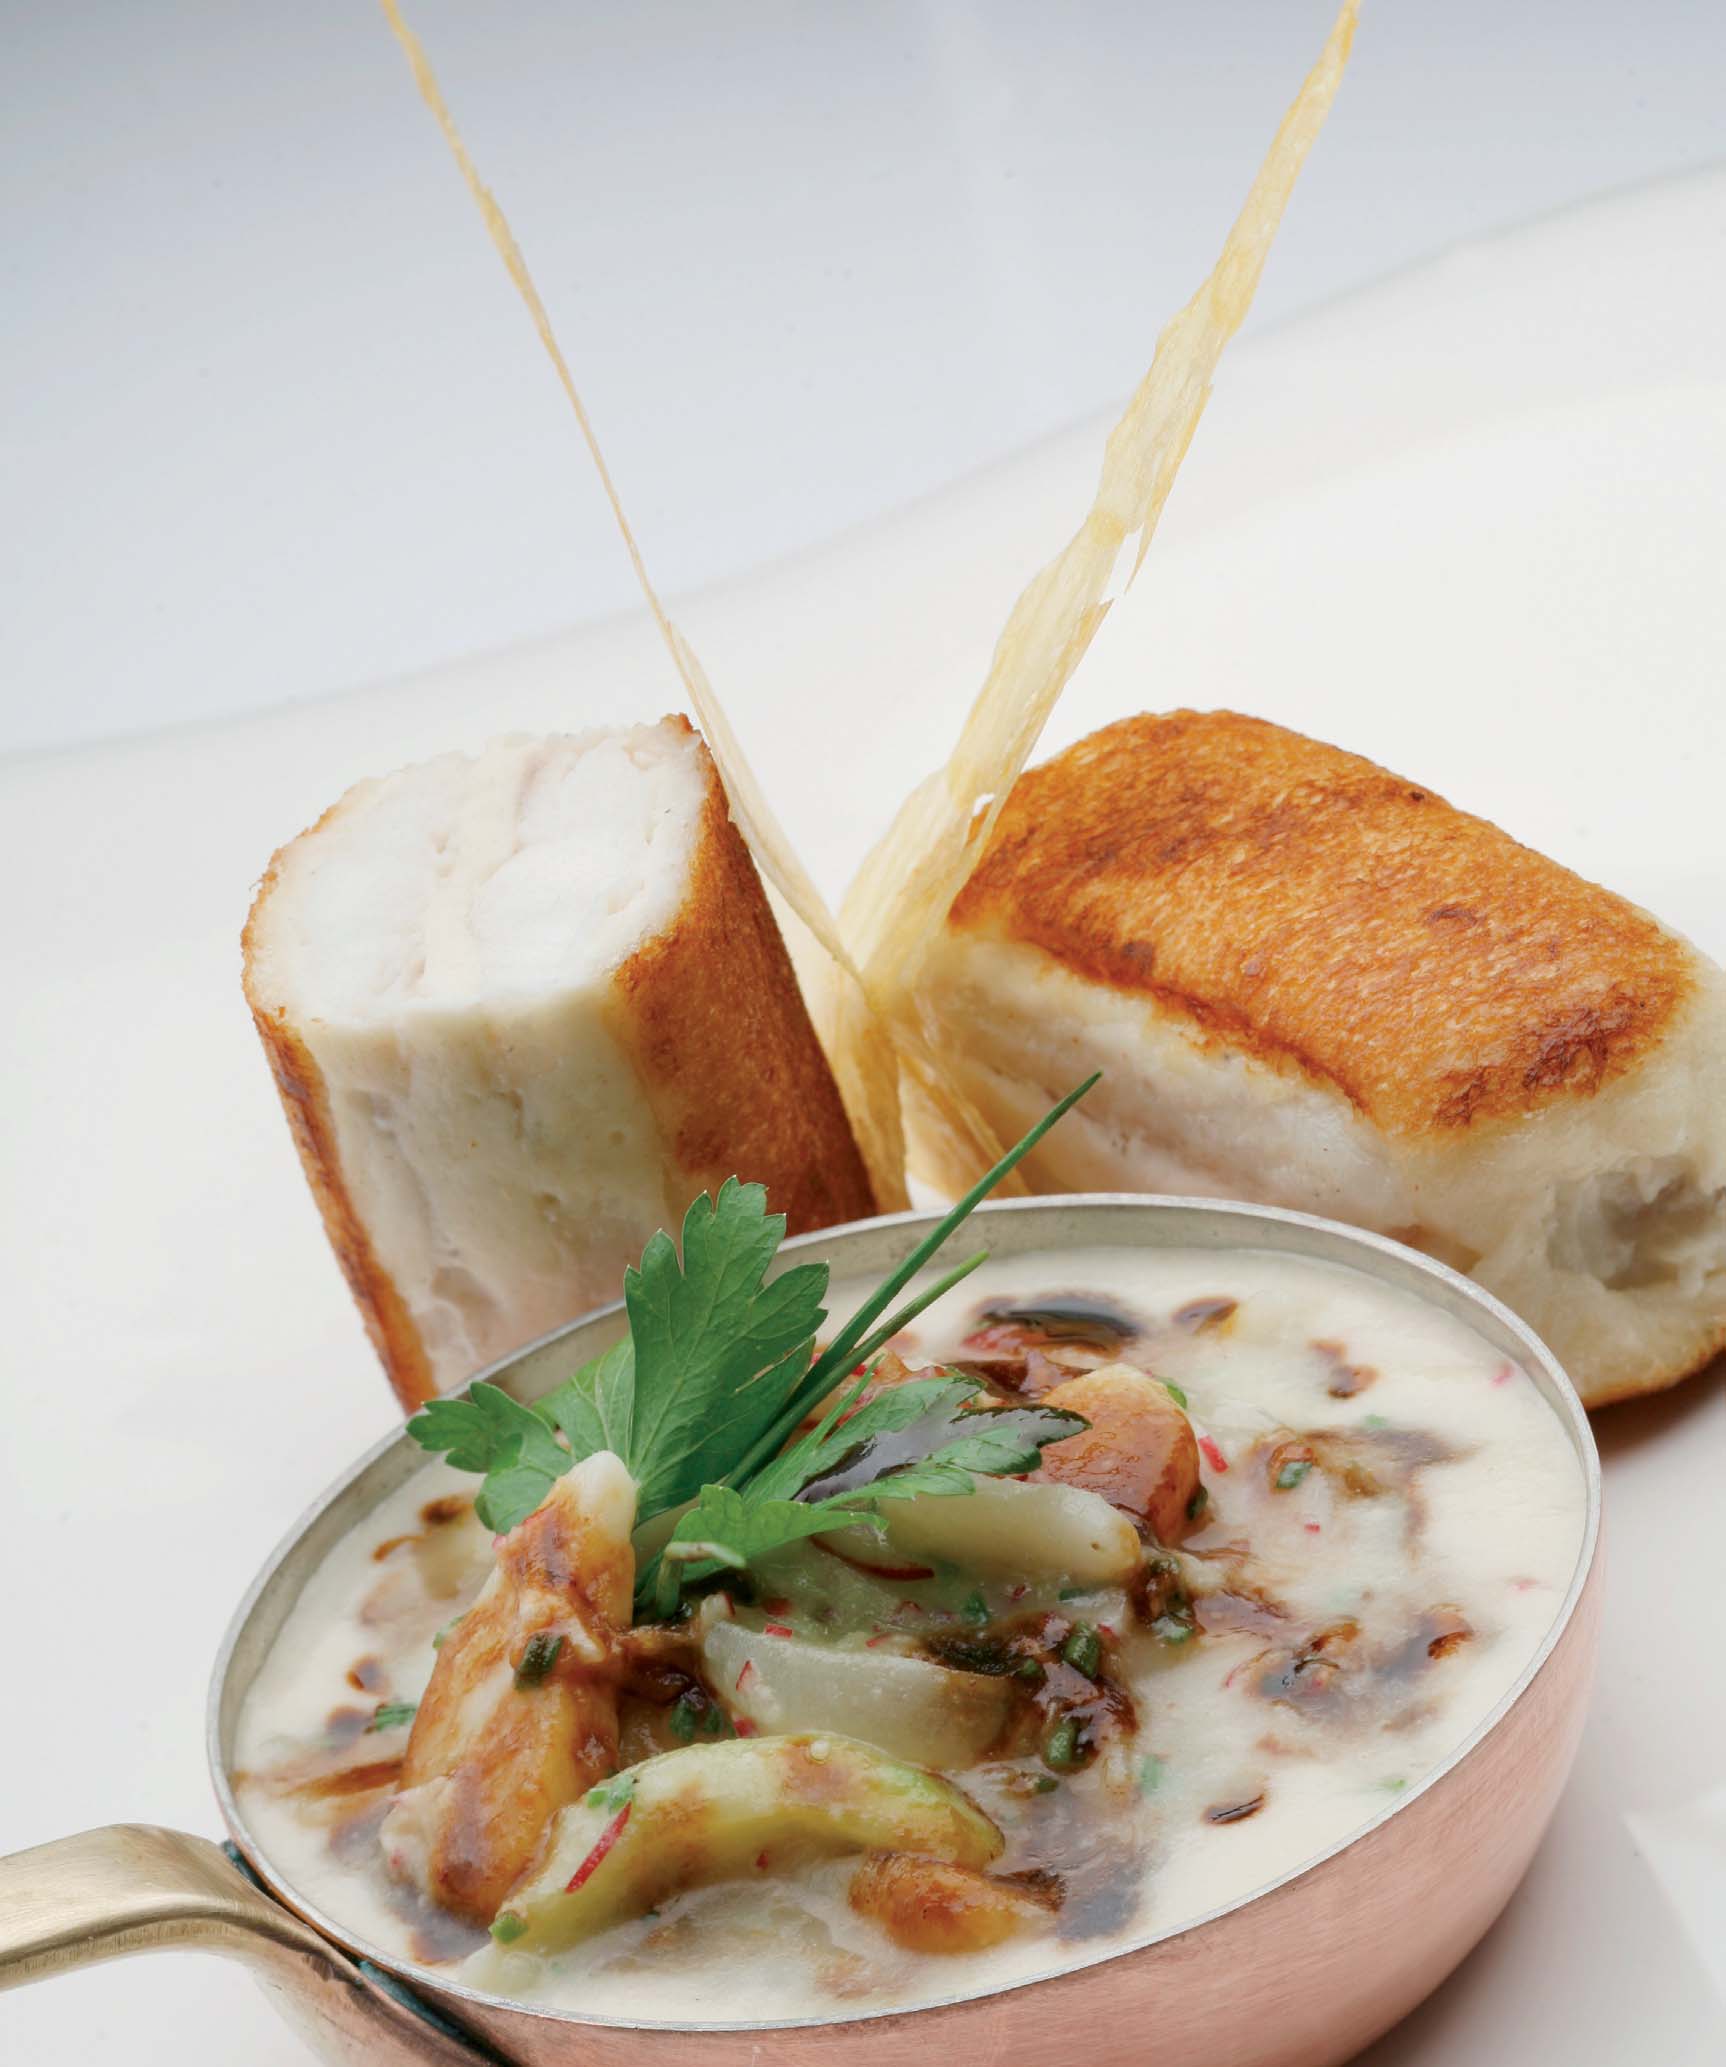 Sandvitx de pelaia amb gaspatxo de patates - Receptes - Gastronomia - Illes Balears - Productes agroalimentaris, denominacions d'origen i gastronomia balear